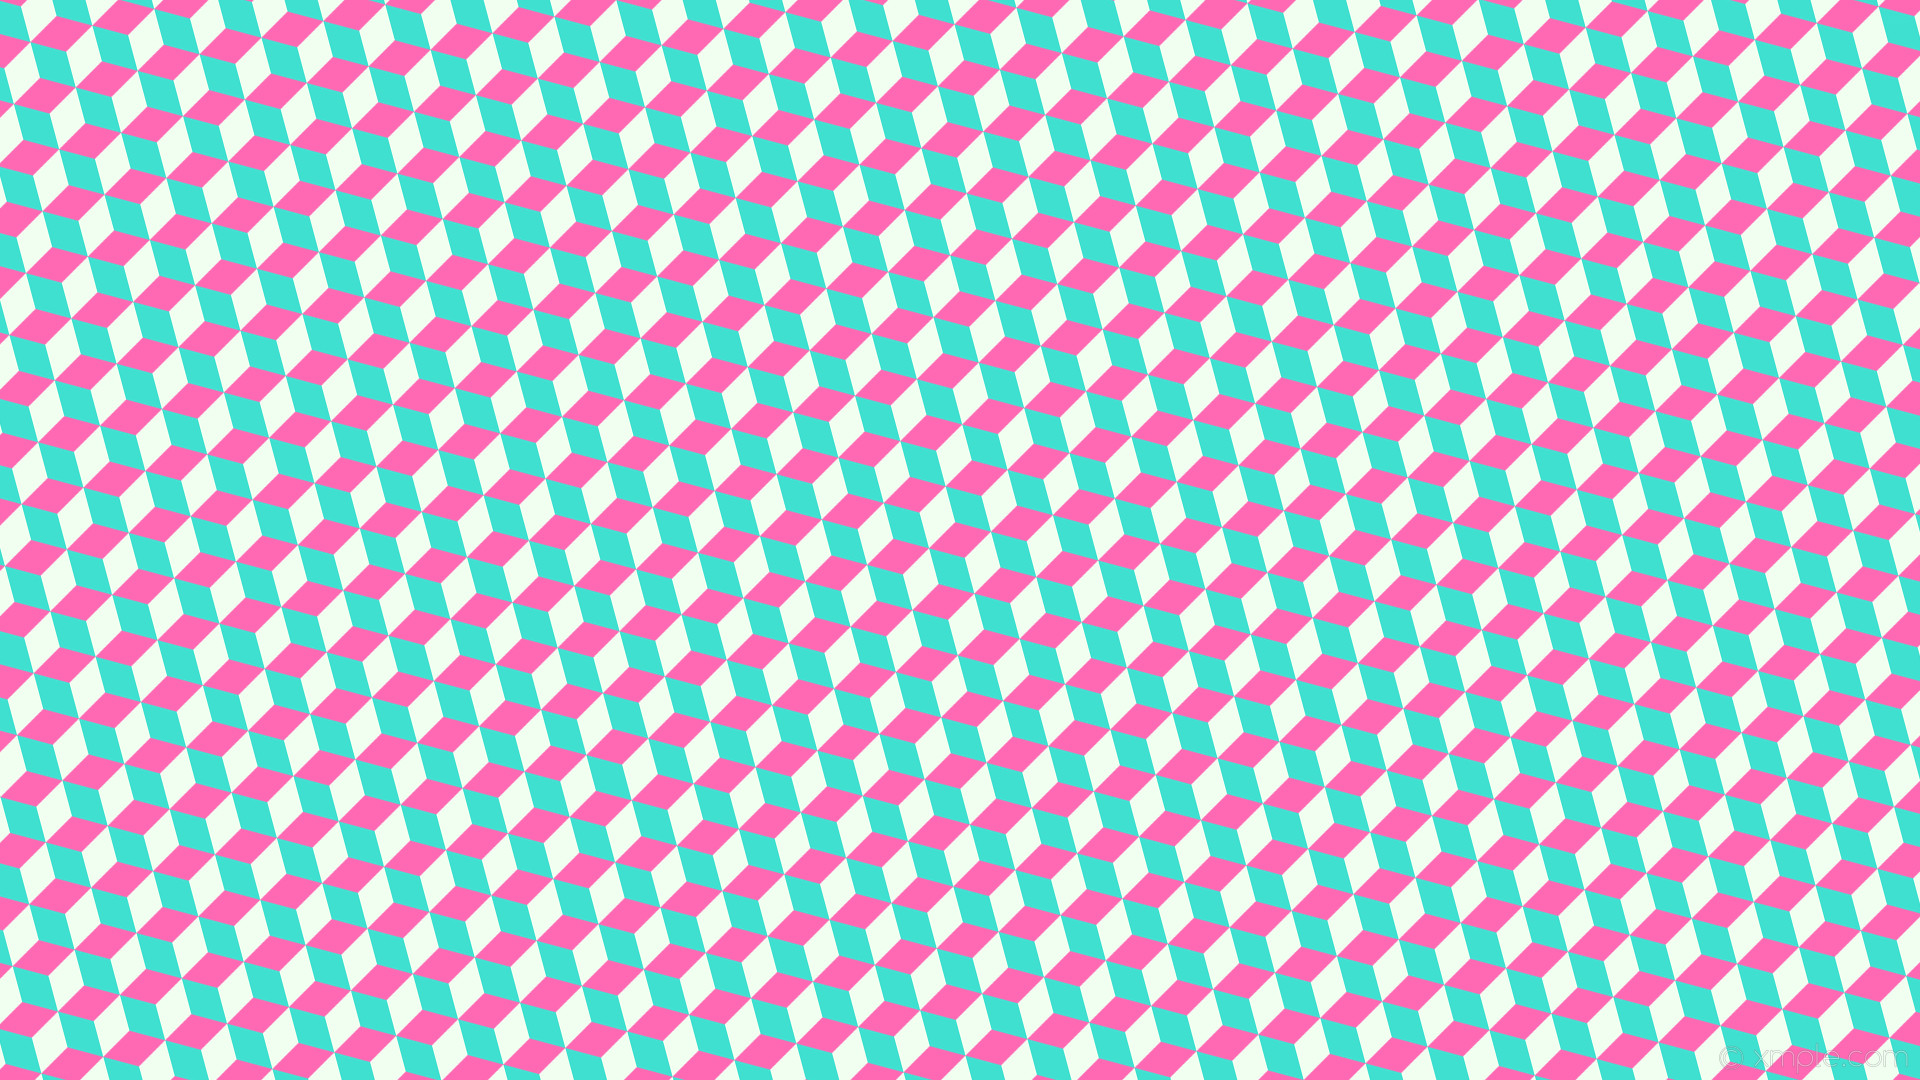 1920x1080 wallpaper 3d cubes blue white pink hot pink turquoise honeydew #ff69b4  #40e0d0 #f0fff0